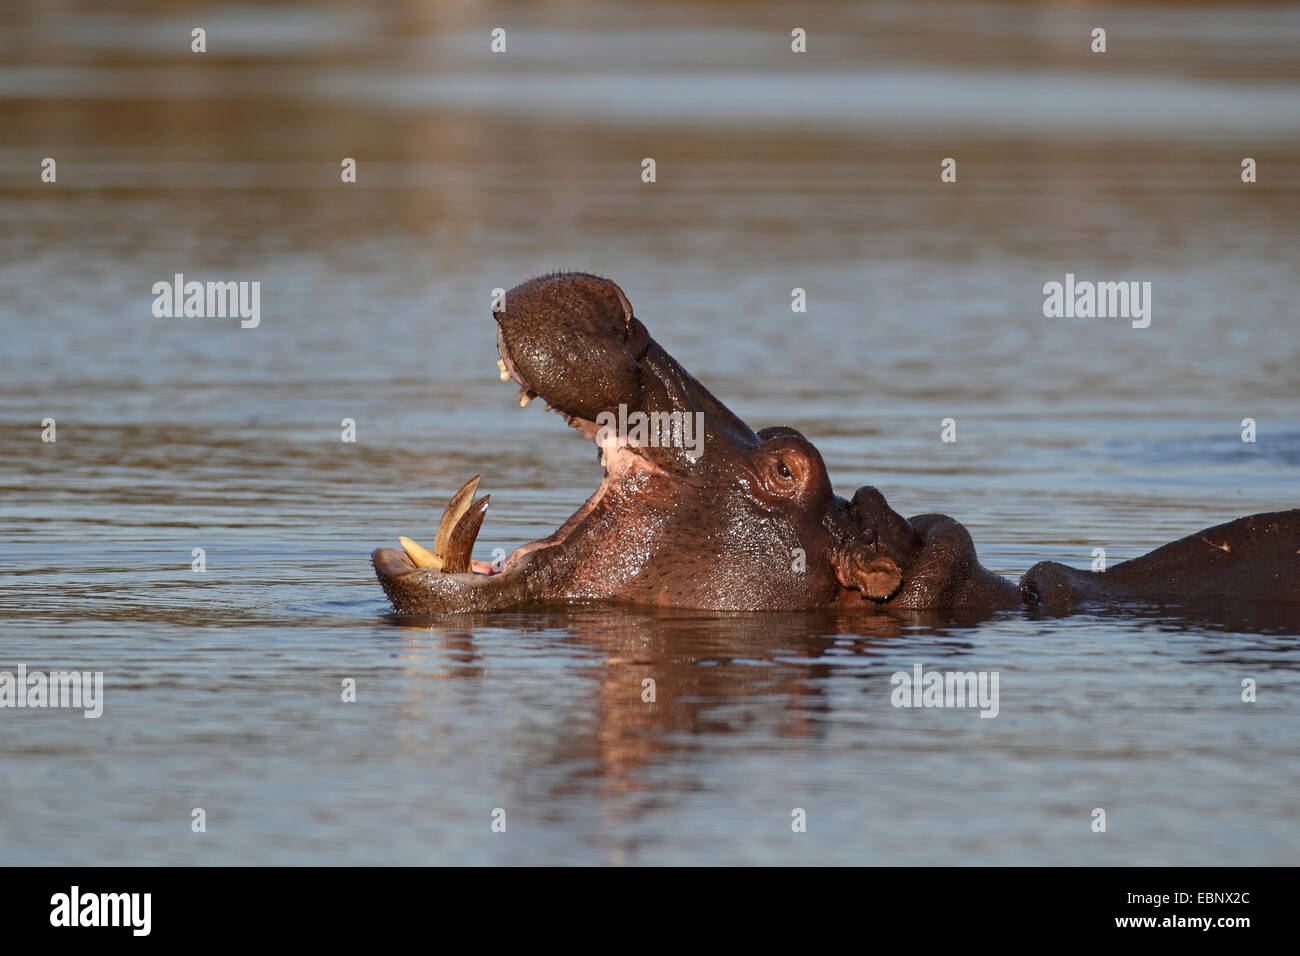 Nilpferd, Nilpferd, gemeinsame Flusspferd (Hippopotamus Amphibius), Schwimmen mit offen Mund, Südafrika, Kruger National Park Stockfoto